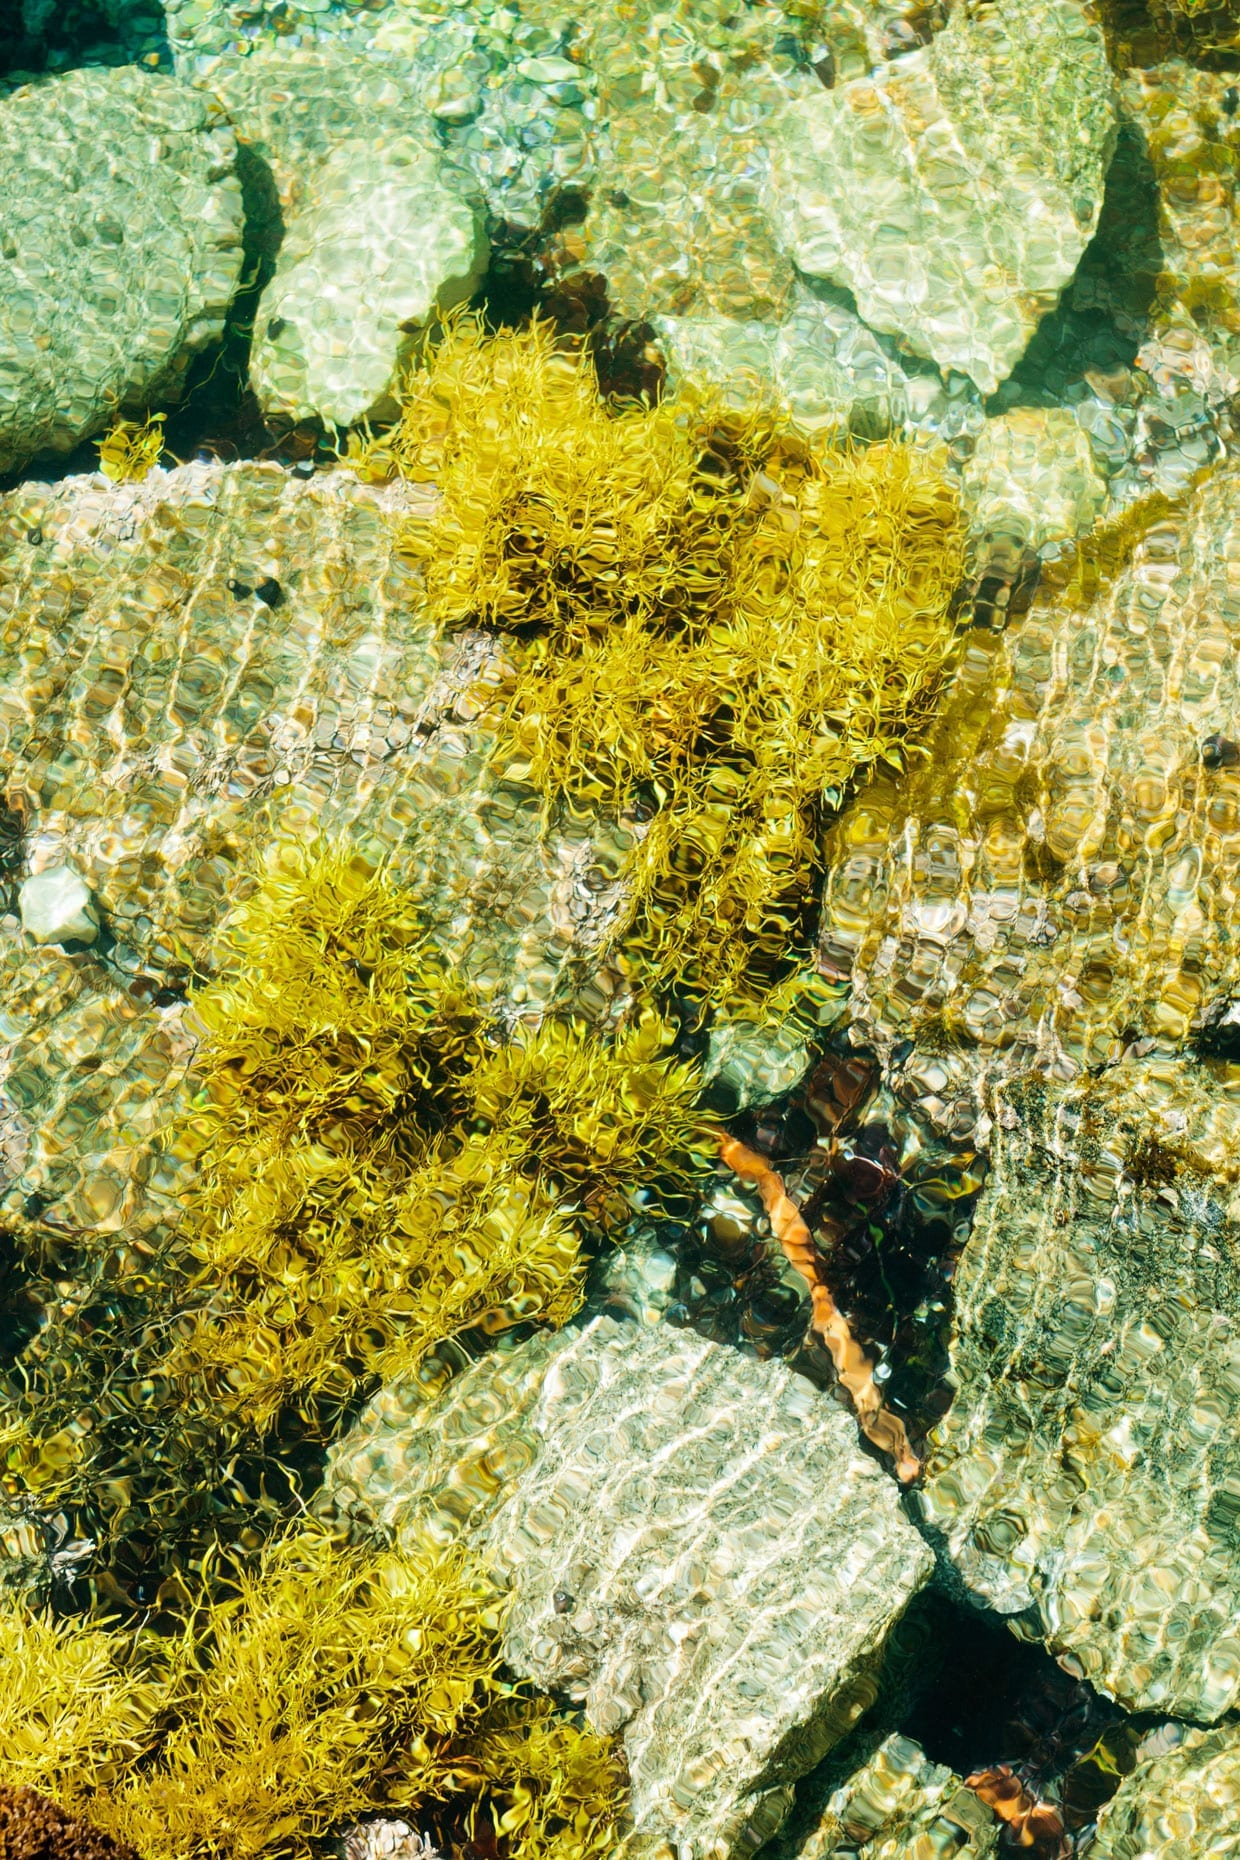 Seaweed and rocks in tide pool.